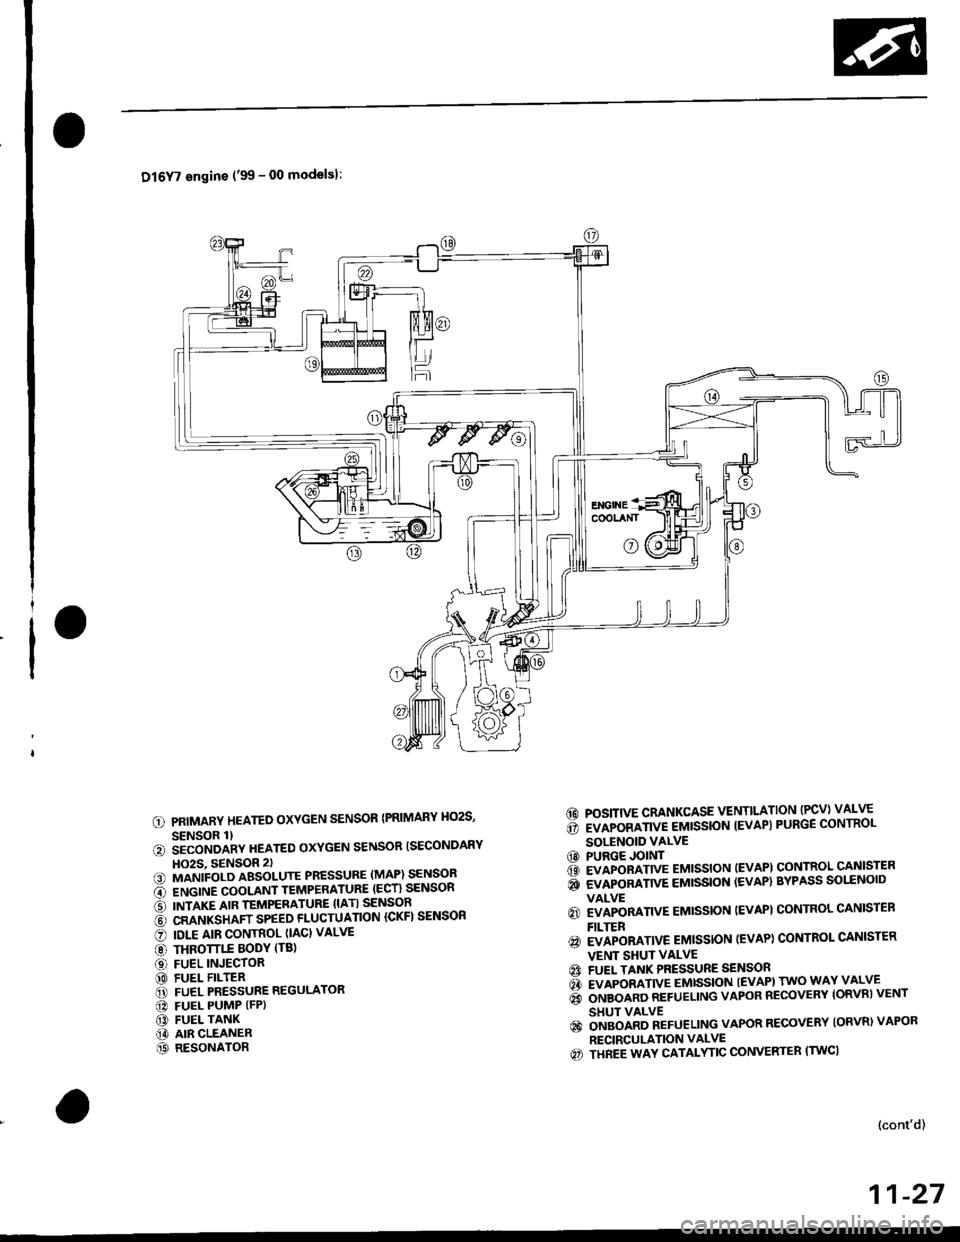 HONDA CIVIC 1998 6.G Workshop Manual Dl6Y7 engins (99 - 00 modelsl:
PRIMARY HEATED OXYGEN SENSOR {PRIMARY HO2S,
SENSOR 1)iiconoanv neareo oxYGEN sENsoR ISECoNDARY
HO2S, 9ENSOR 2)MANIFOLD ABSOLUTE PRESSURE (MAP) SENSOR
ENGINE COOLANT TEM